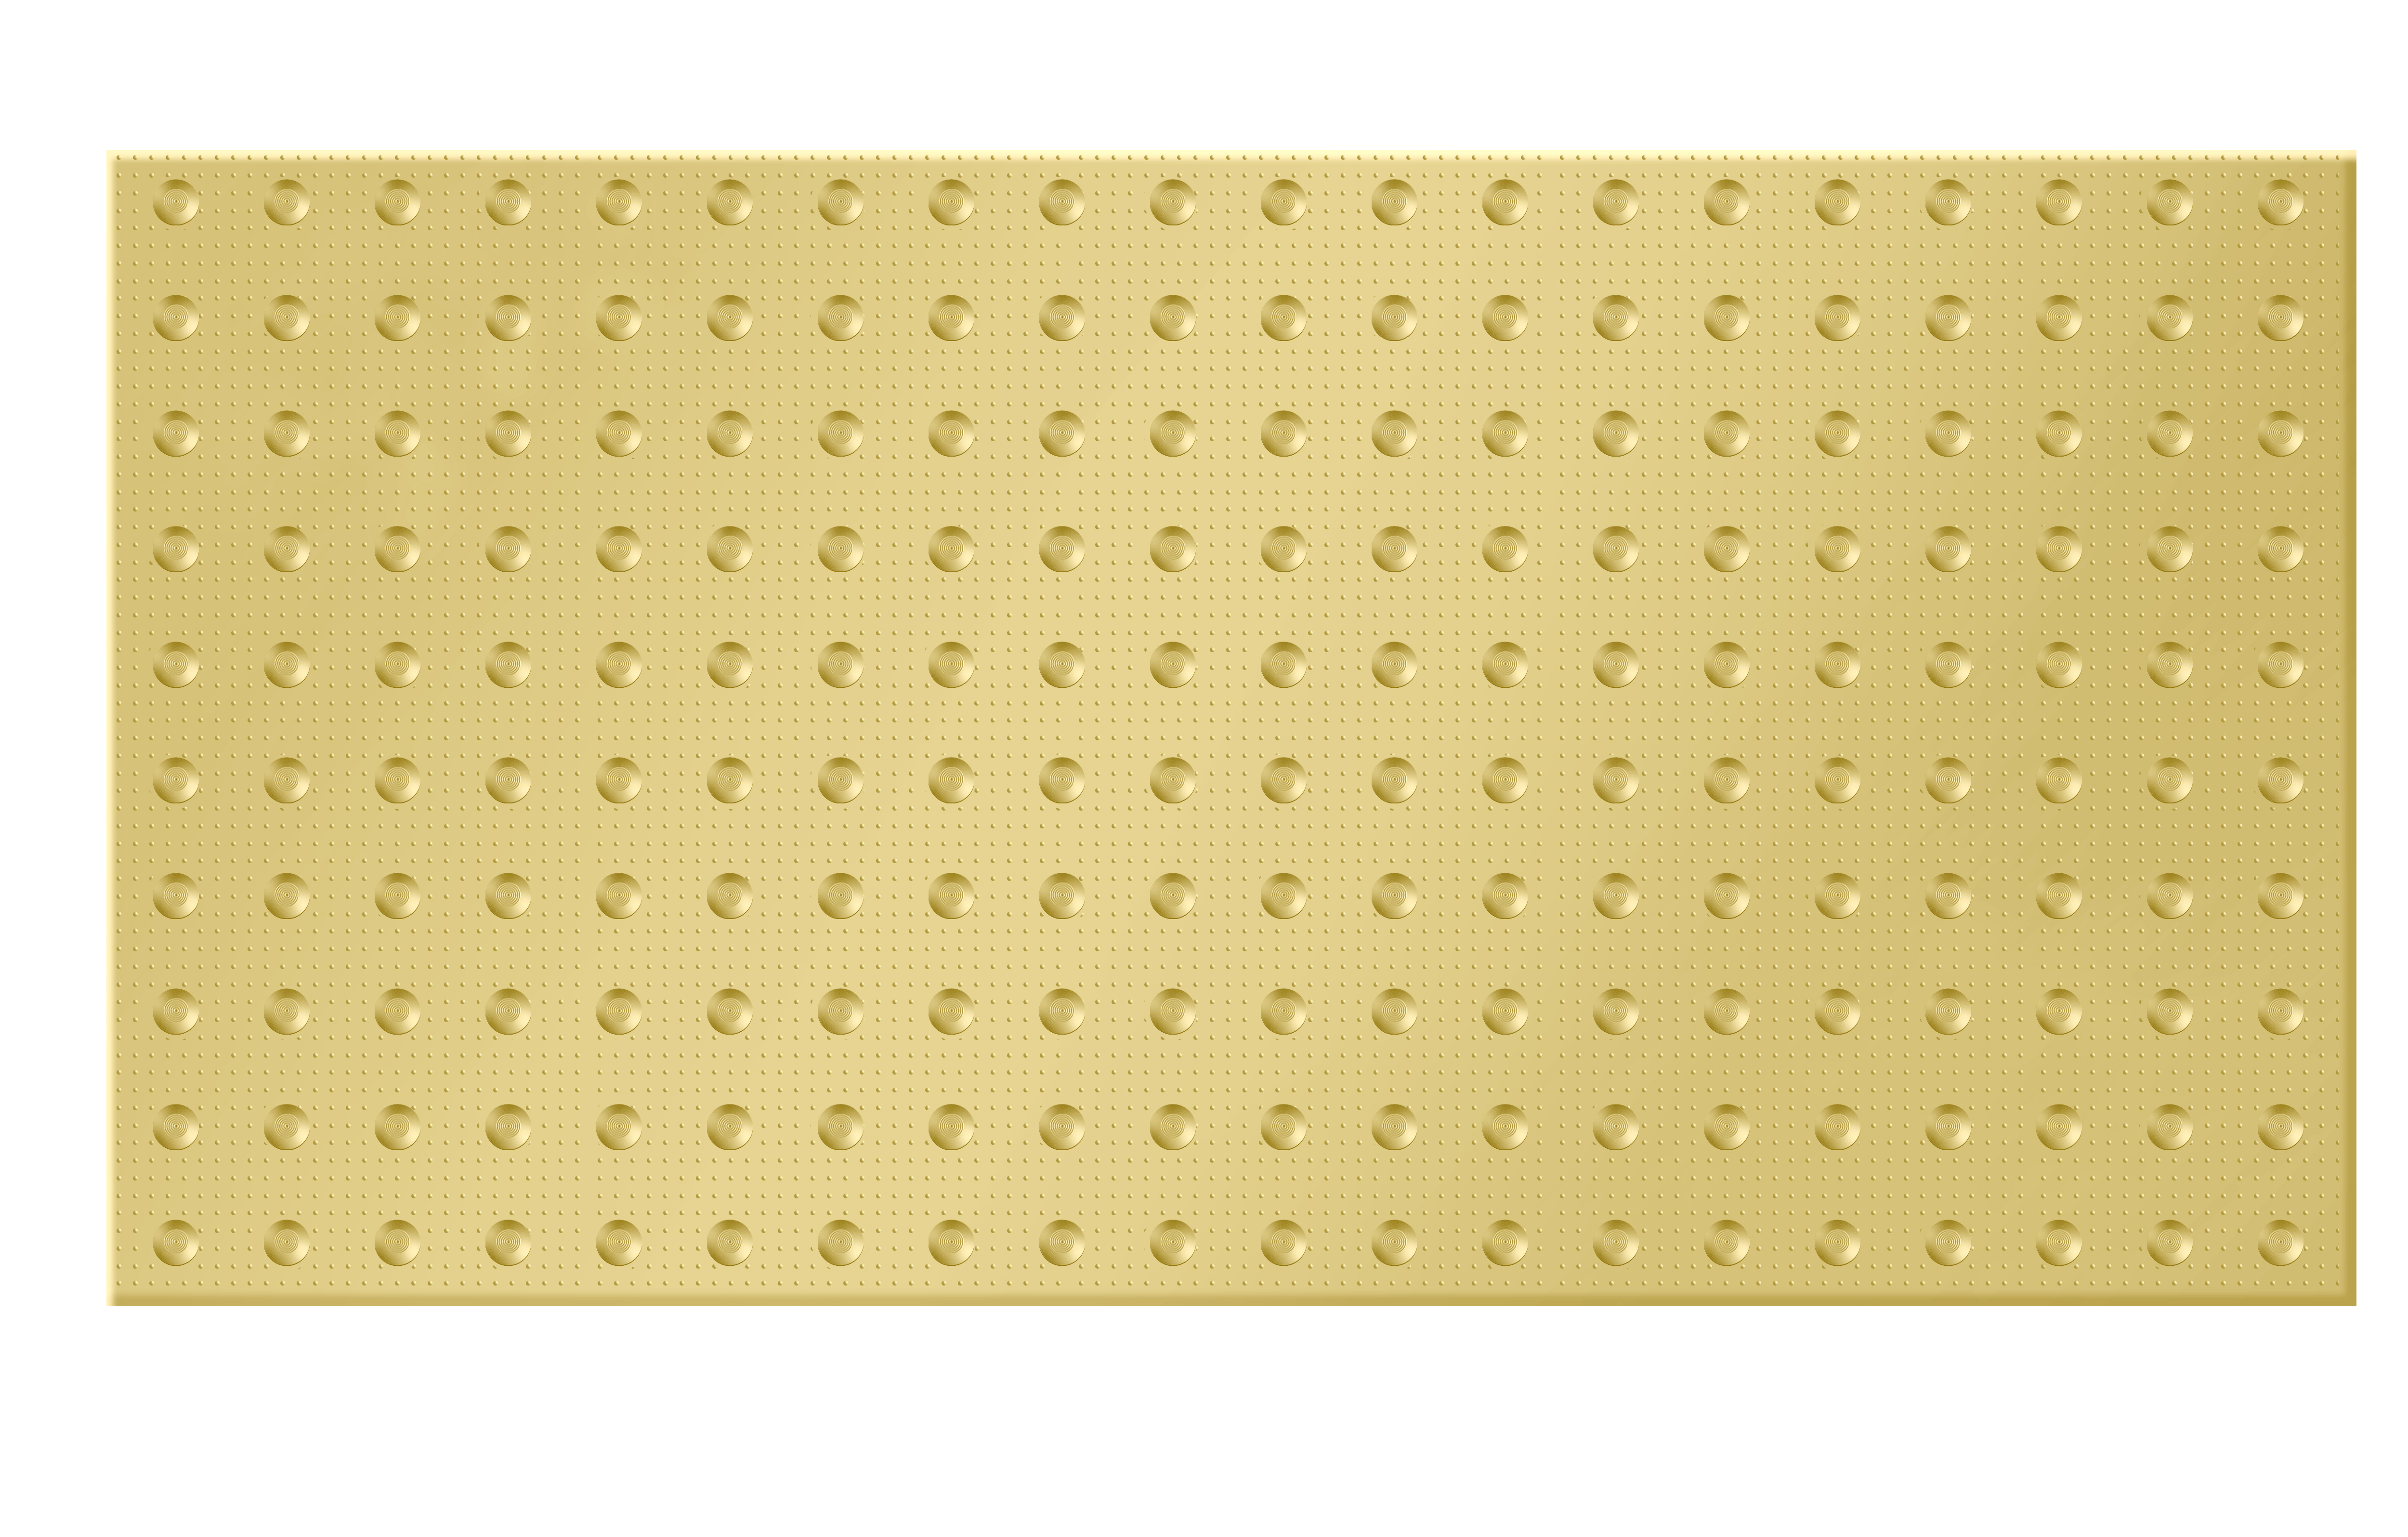 Taktile PVC-Fliesenmatte Gelb Schwarz Grau 1200✖600mm Anti-UV RY-BP503